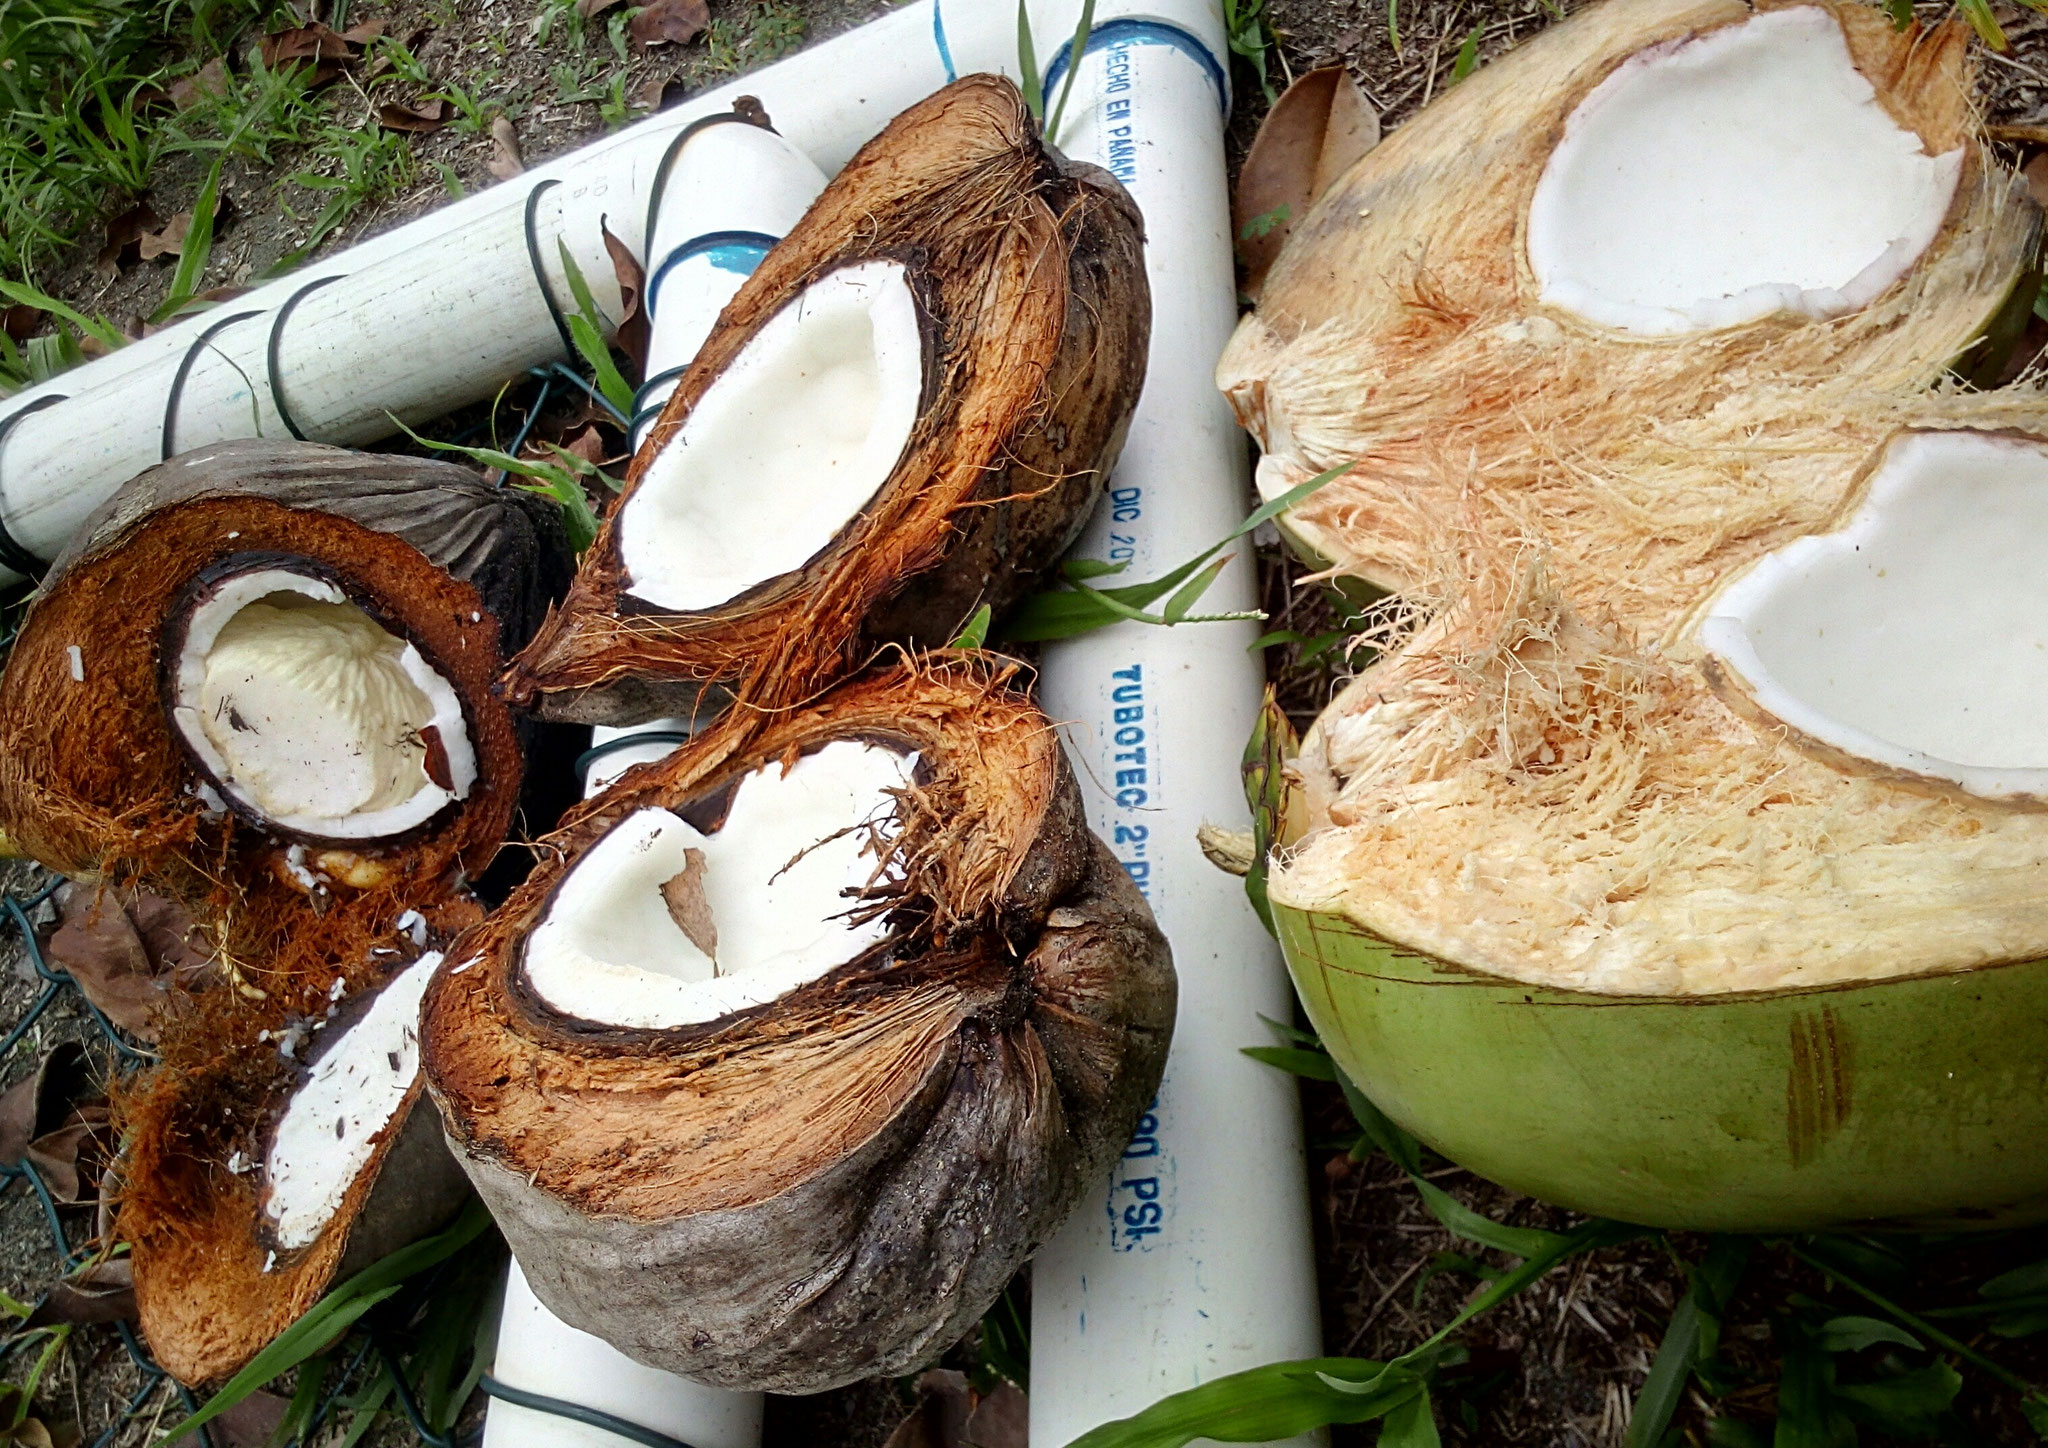 Prozess der Kokosnuss: 1. re: Pipa mit Kokoswasser und zartem Fruchtfleisch 2. mitte: Kokosnuss 3. li: einige Monate später hat sich in der Kokosnuss ein Art "Schwamm" gebildet, den man essen kann, das Kokosfleisch außenrum hat dann keinen Geschmack mehr 